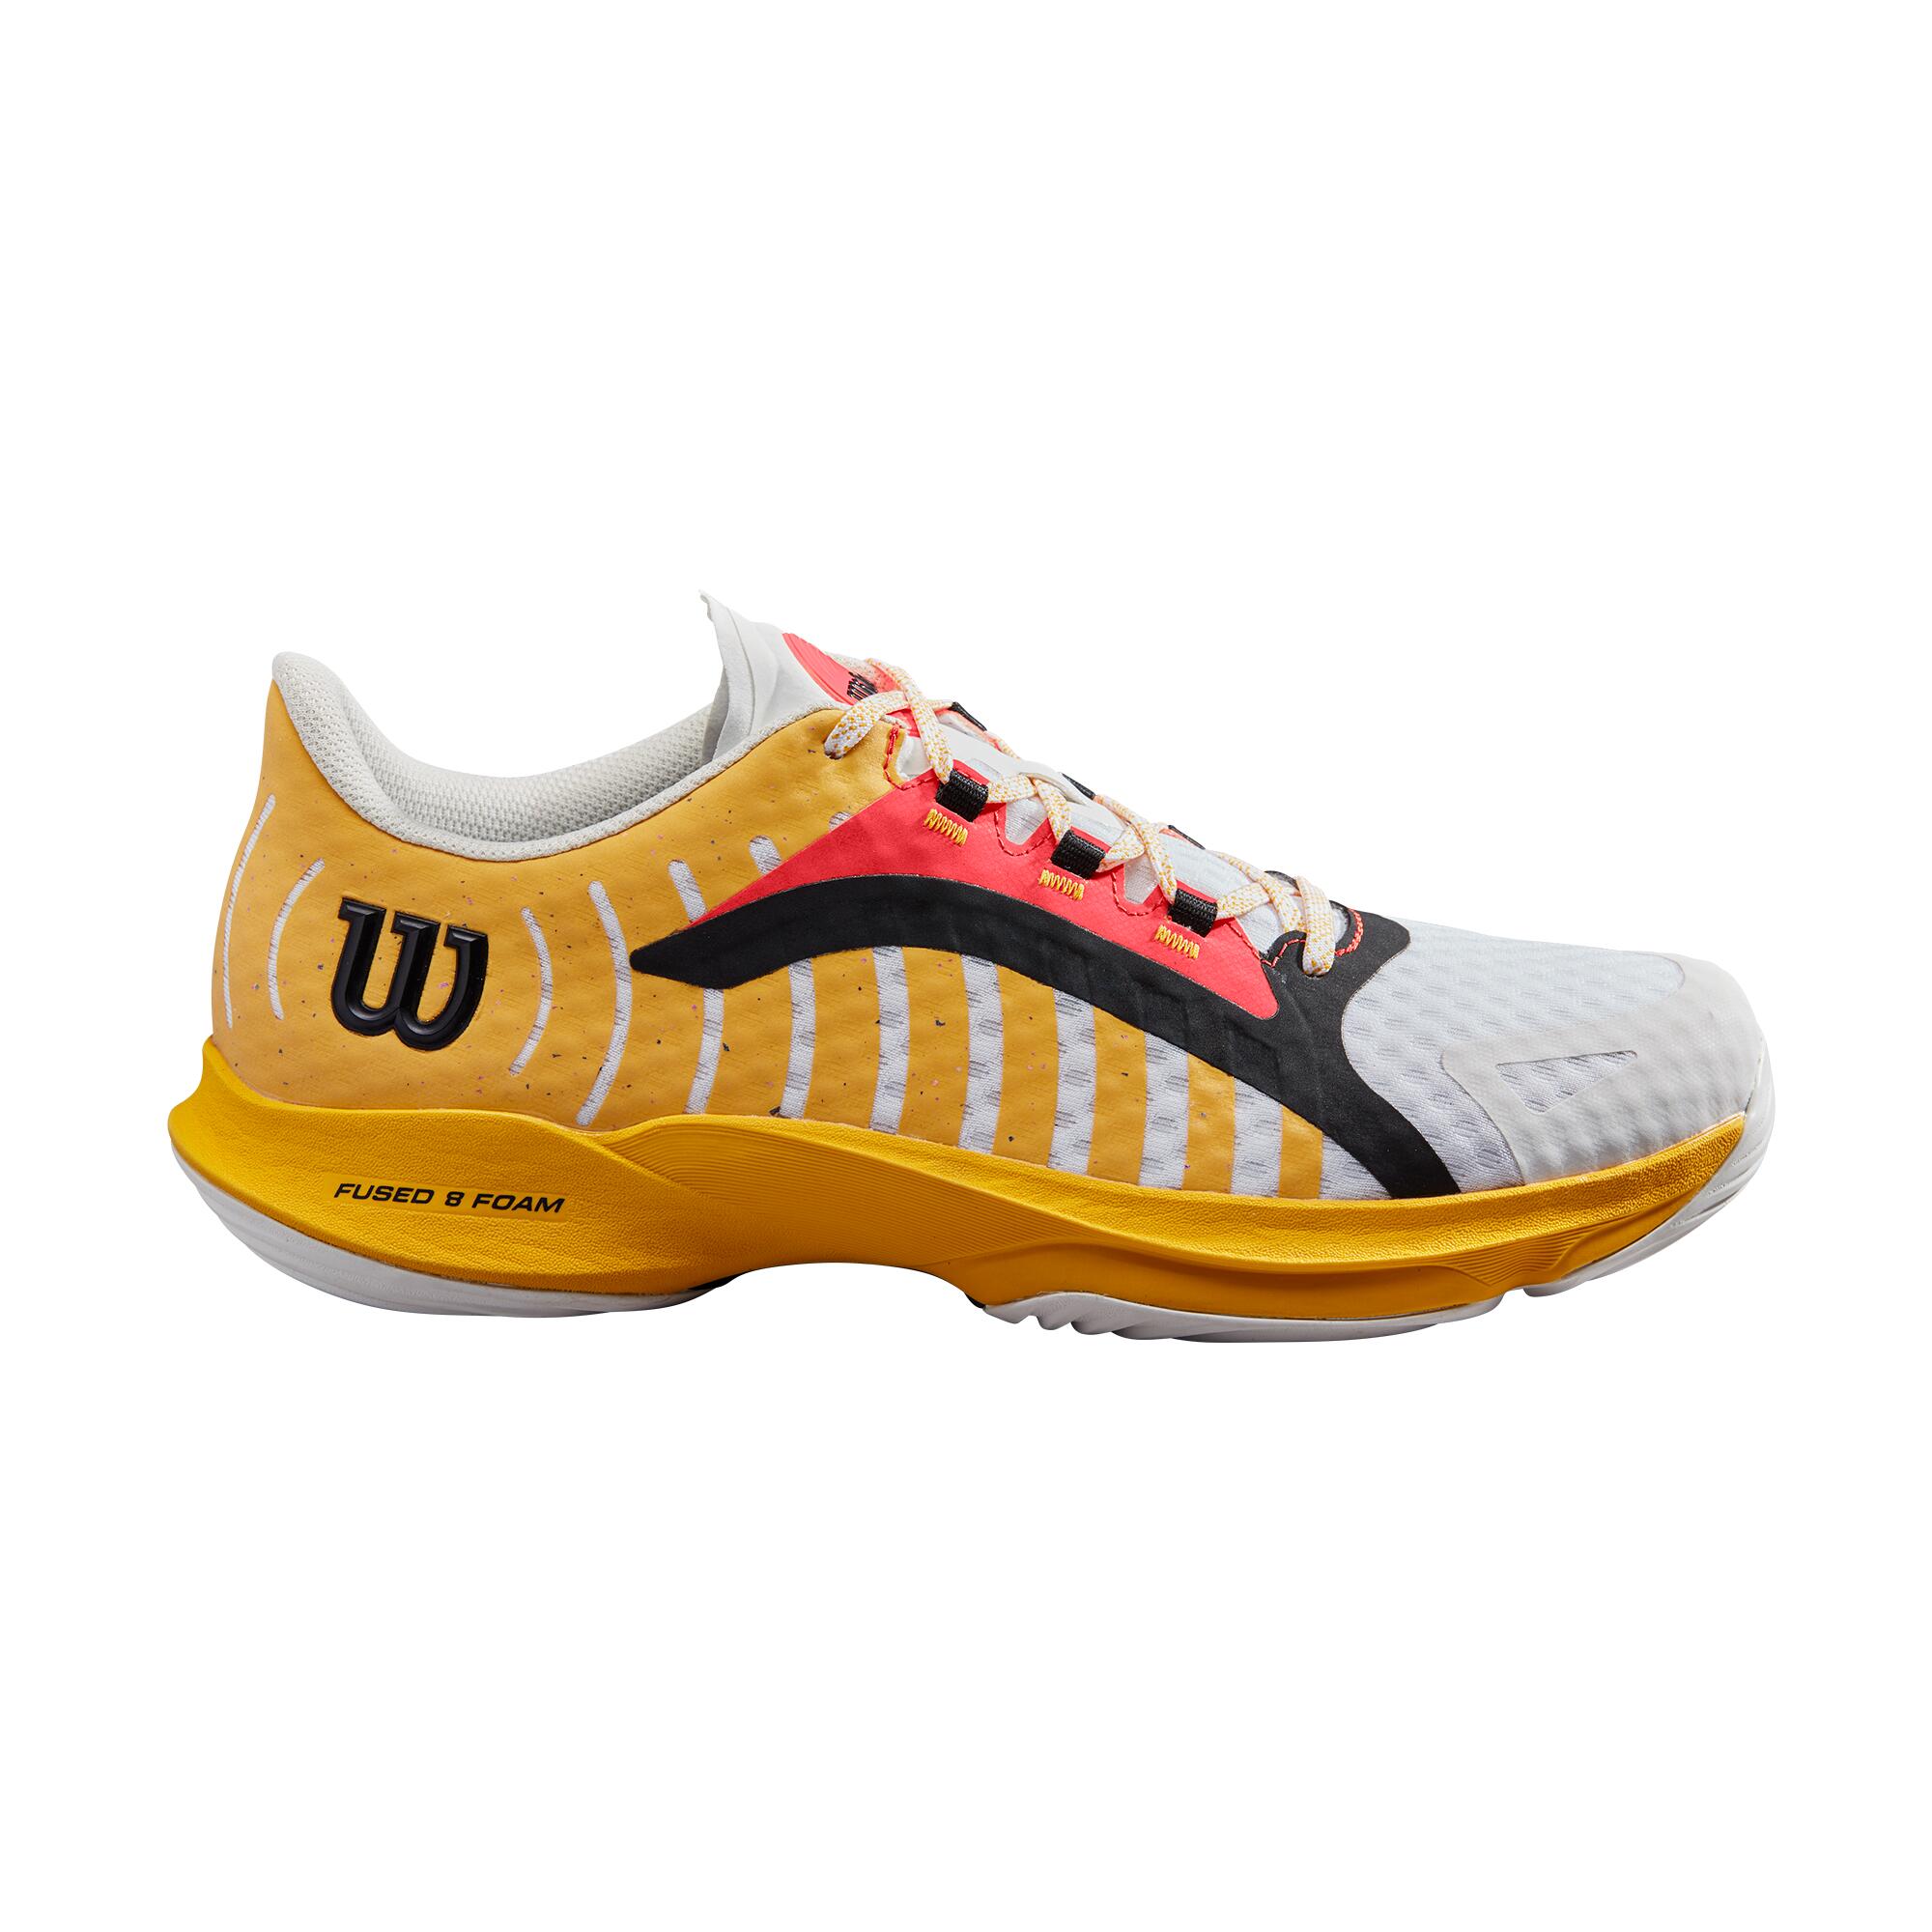 Wilson Hurakn Pro Men's Padel Tennis Sports Shoe Trainer - White/Old Gold/Fiery 2/4